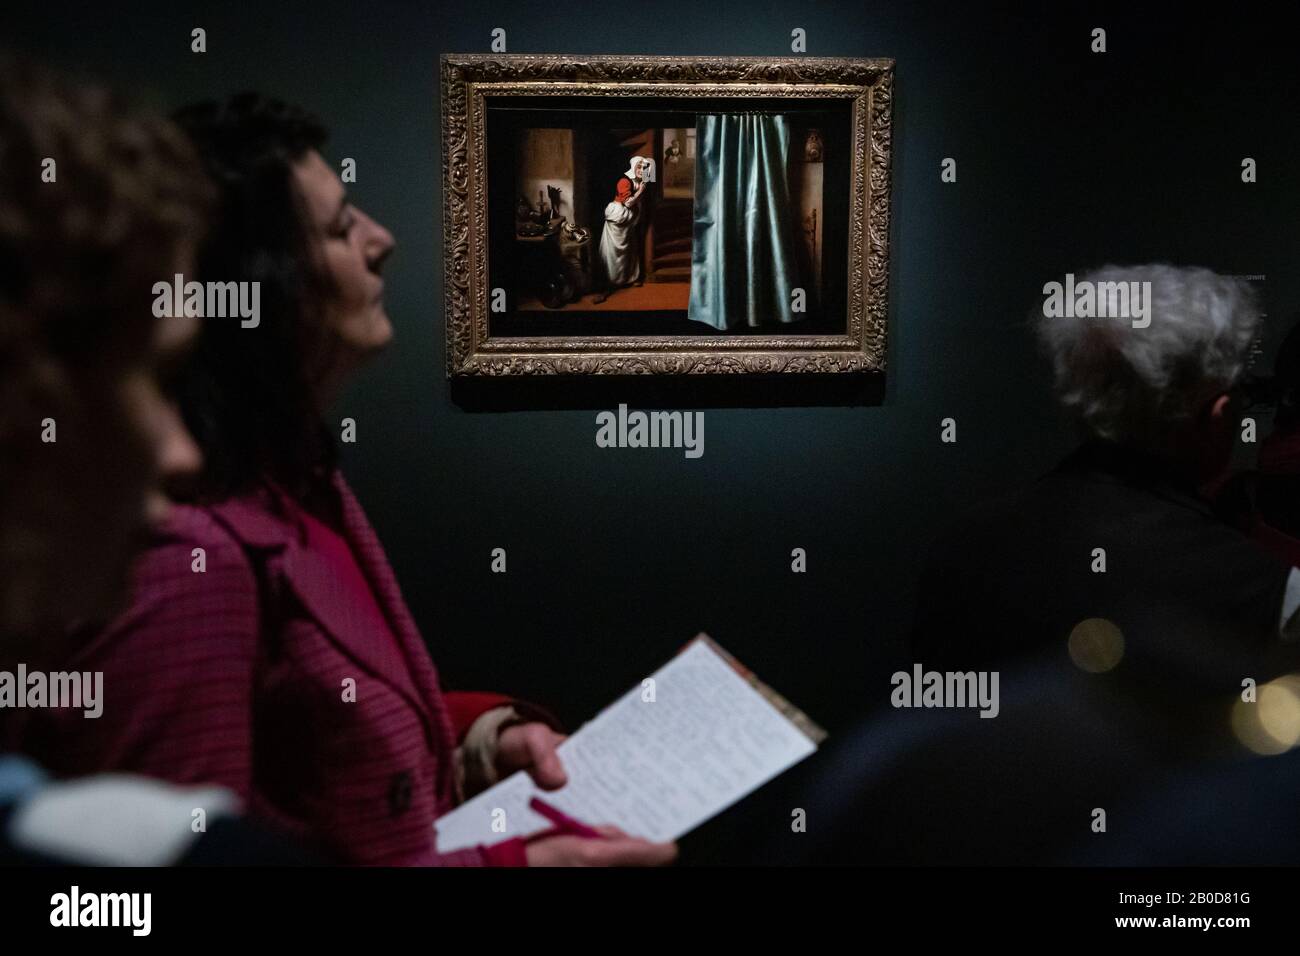 Der Laudasein von Nicolaes Maes wird von Galeriebesuchern in einer Presseansicht für die neue Ausstellung Nicolaes Maes: Dutch Master of the Golden Age, in der National Gallery, London, angesehen. Stockfoto